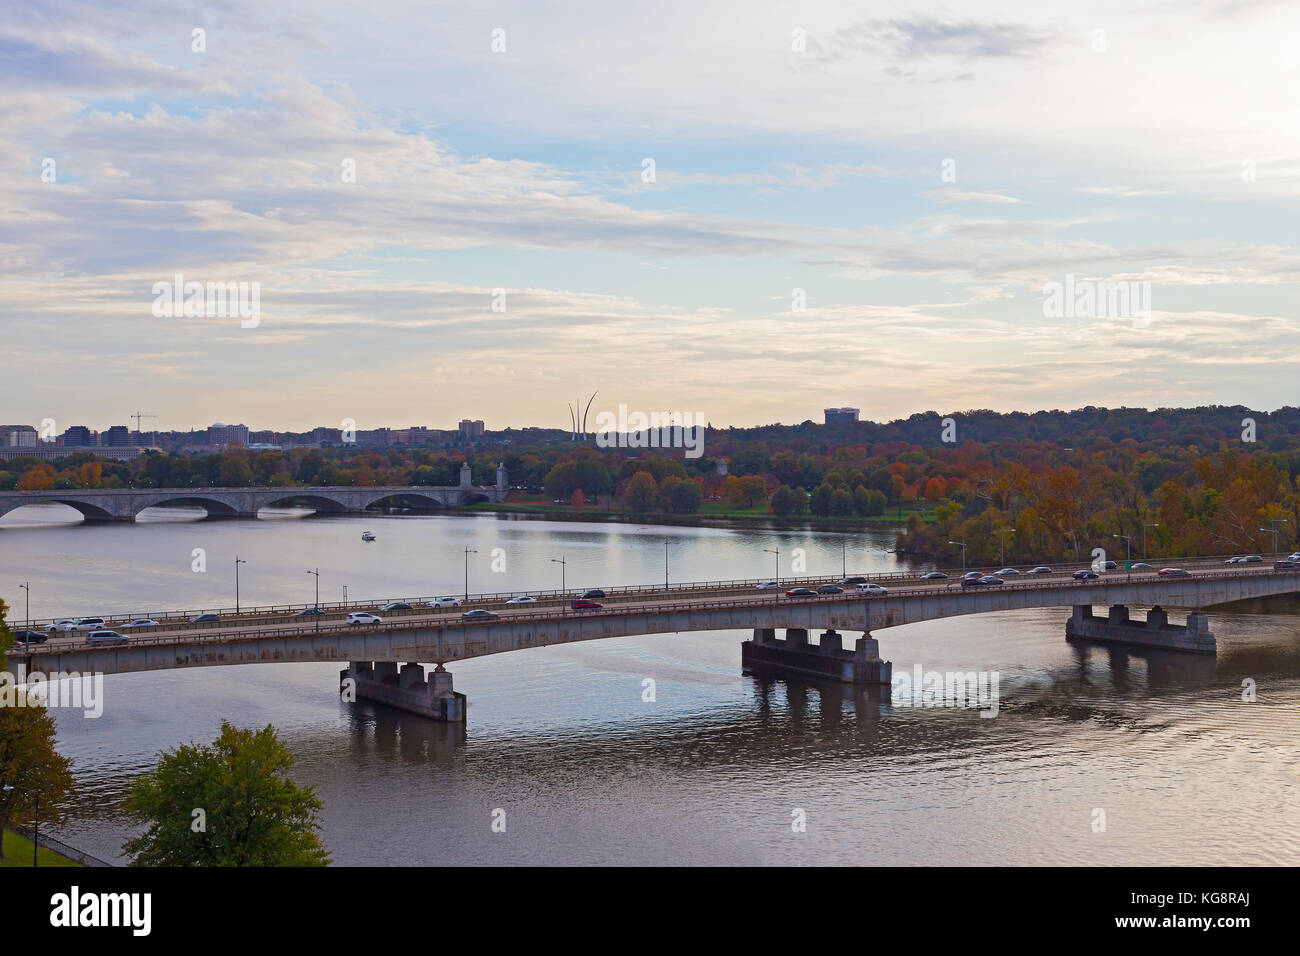 Theodore Roosevelt bridge et Arlington memorial bridge au coucher du soleil à Washington DC, USA. automne panorama capital nous le long de la rivière Potomac. Banque D'Images